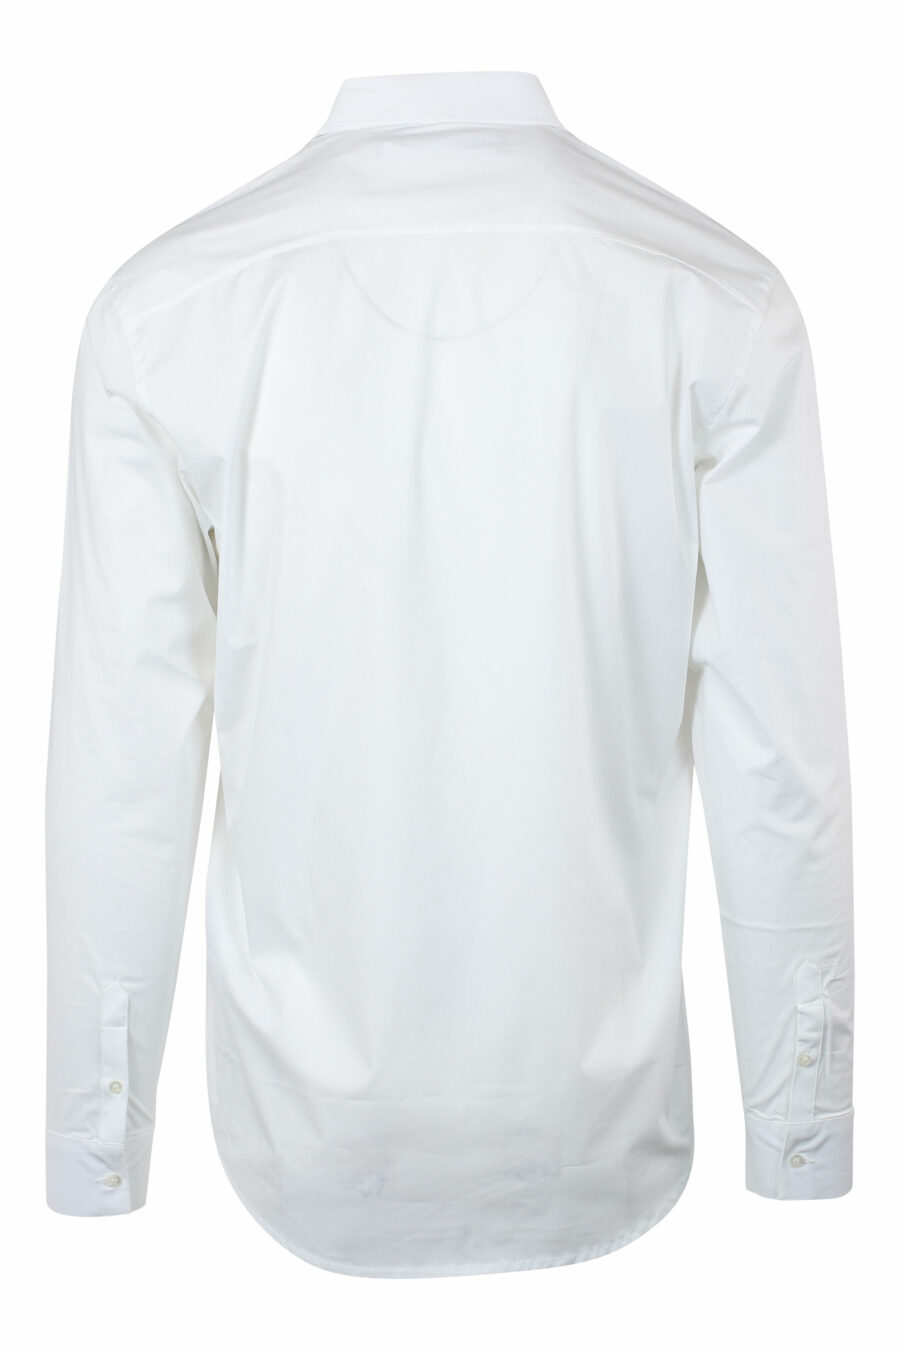 Weißes Hemd mit Minilogo "karl" in schwarzer Silhouette - IMG 9679